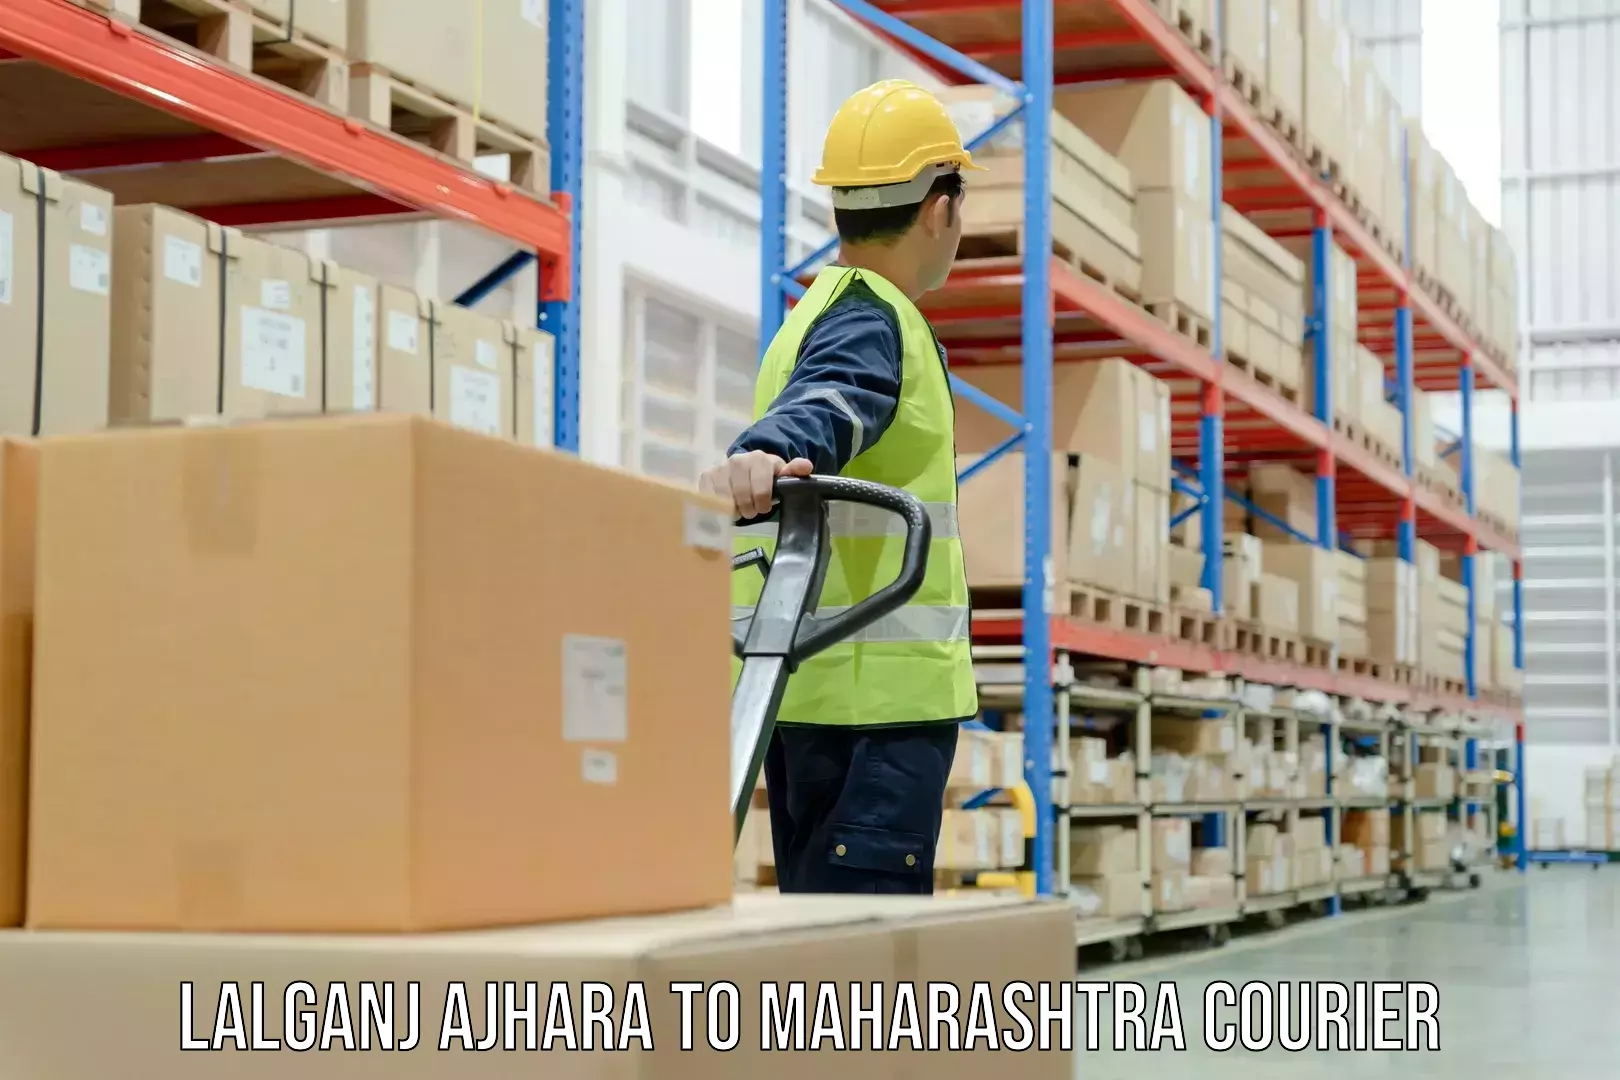 Specialized courier services Lalganj Ajhara to Maharashtra